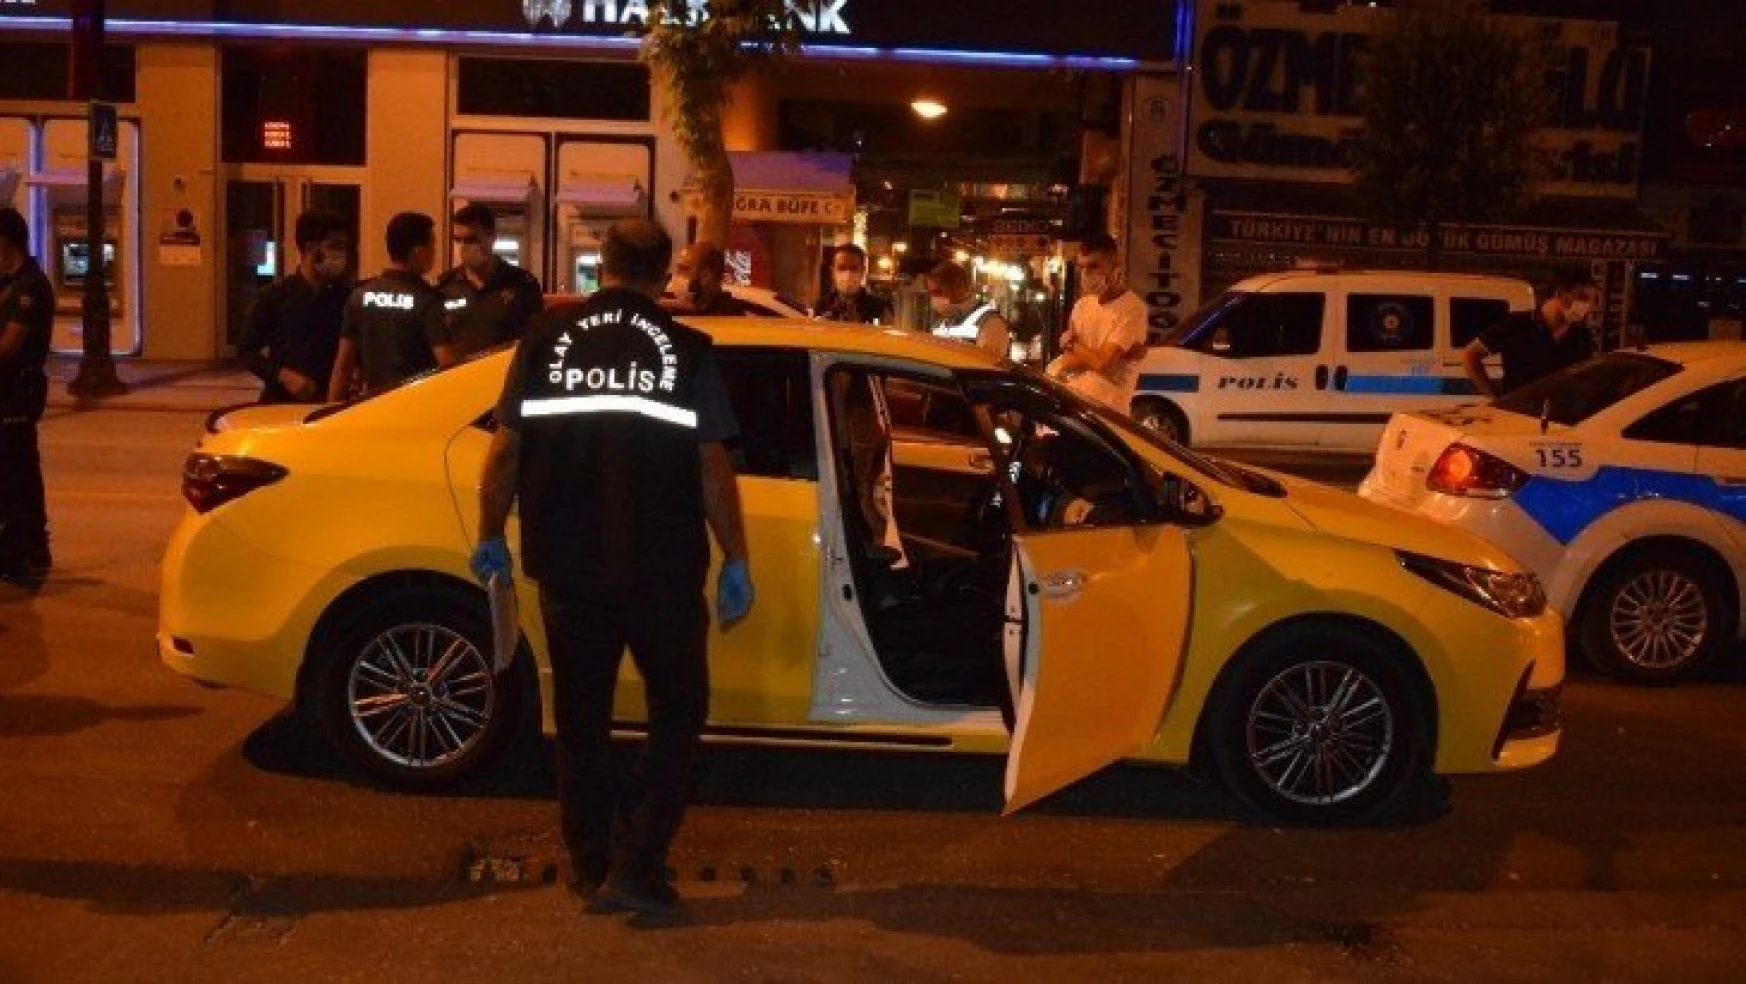 Malatya'da araç içerisinde silahla vurulan 1 kişi yaralandı